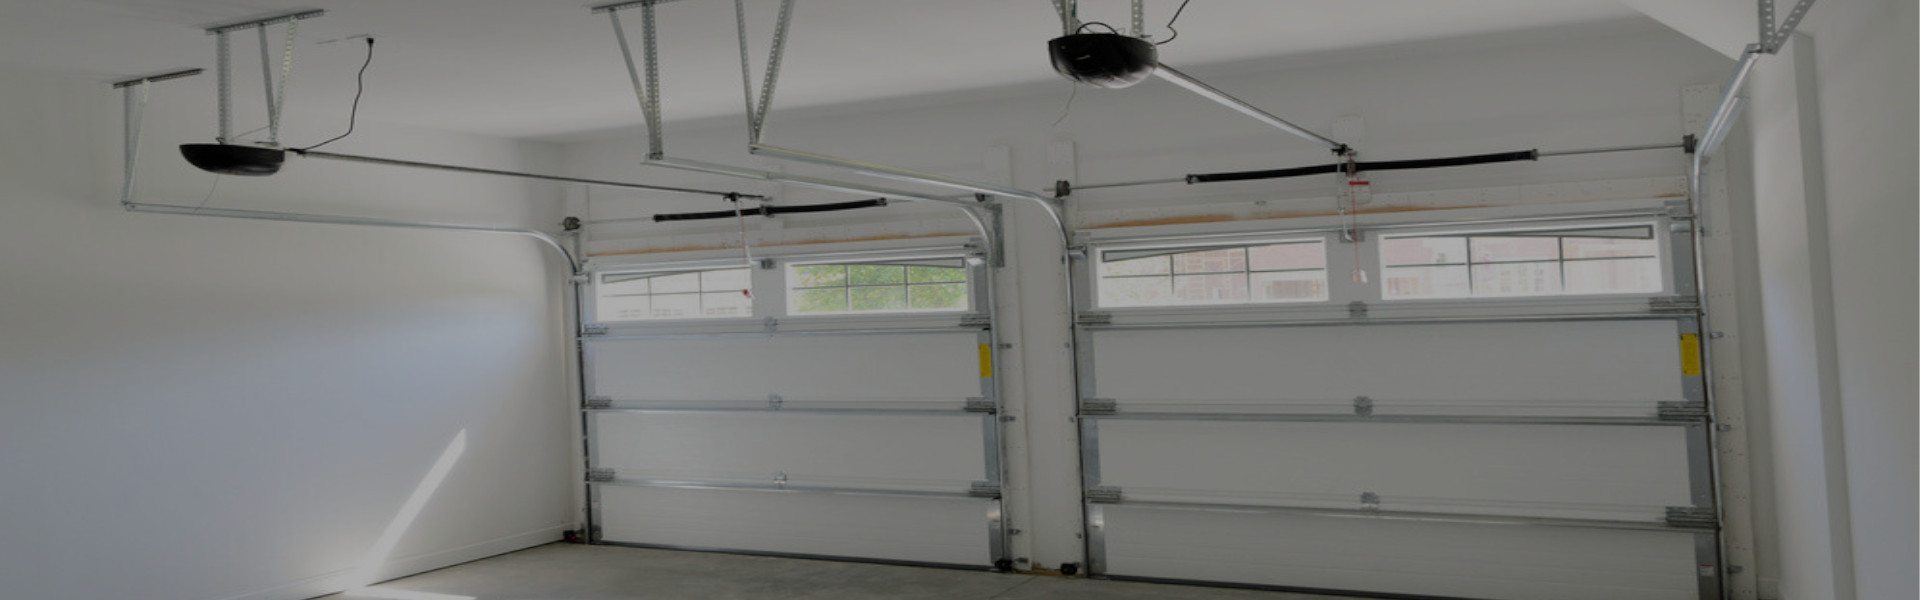 Slider Garage Door Repair, Glaziers in Broxbourne, EN10